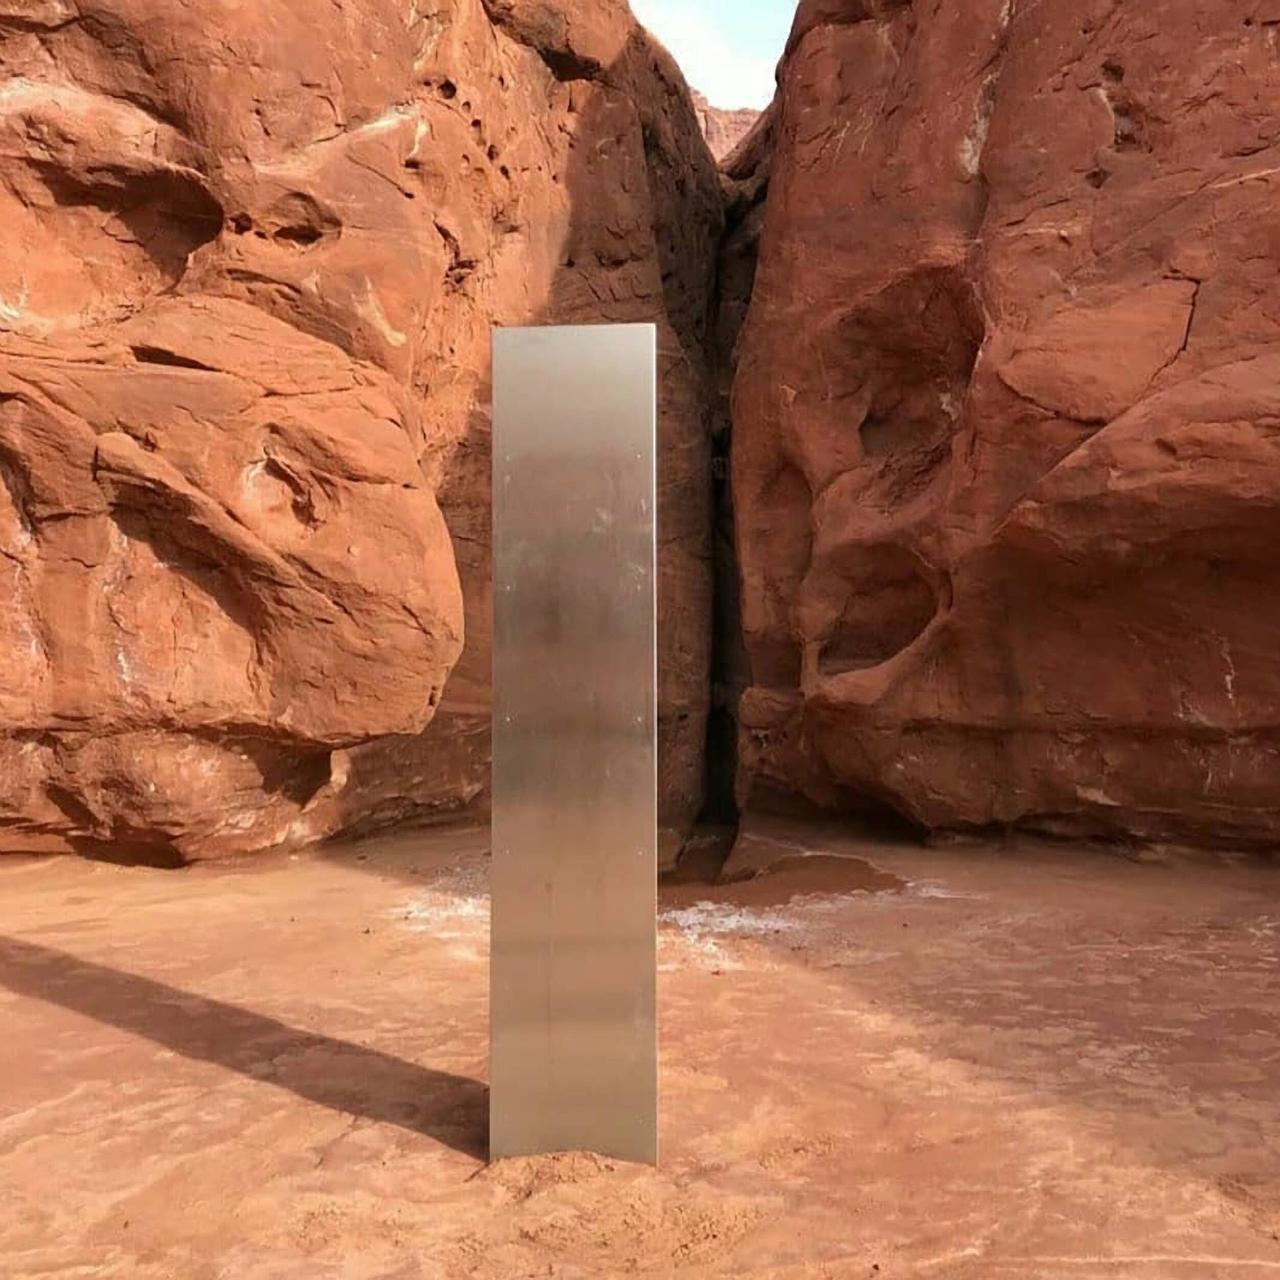 Eine geheimnisvolle Stele aus Metall steht in der Utah Wüste in USA, November 2020. Sie ähnelt dem schwarzen Monolith aus dem Film "2001: Odyssee im Weltraum" von Kubrick.